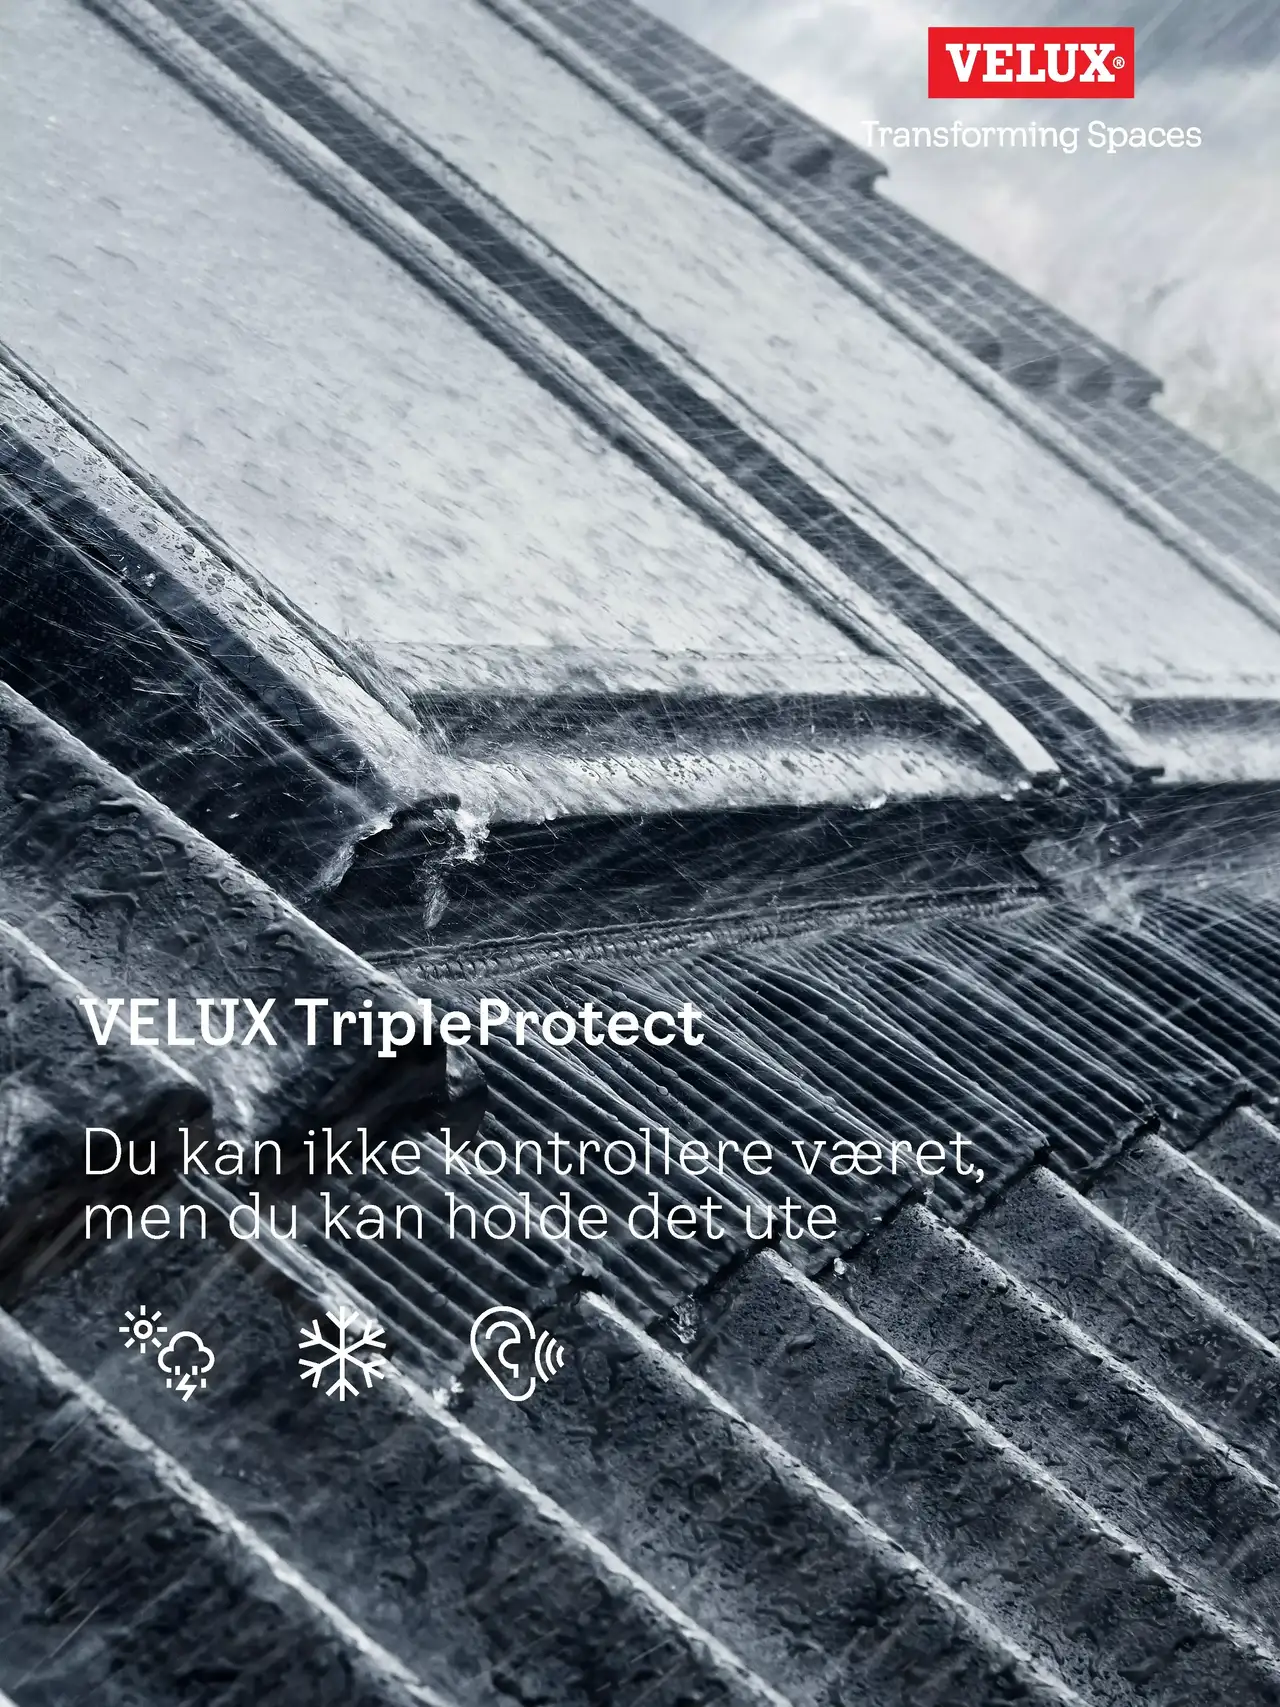 Nahaufnahme eines VELUX TripleProtect Dachflächenfensters, das starkem Regen standhält und so seine Langlebigkeit symbolisiert.